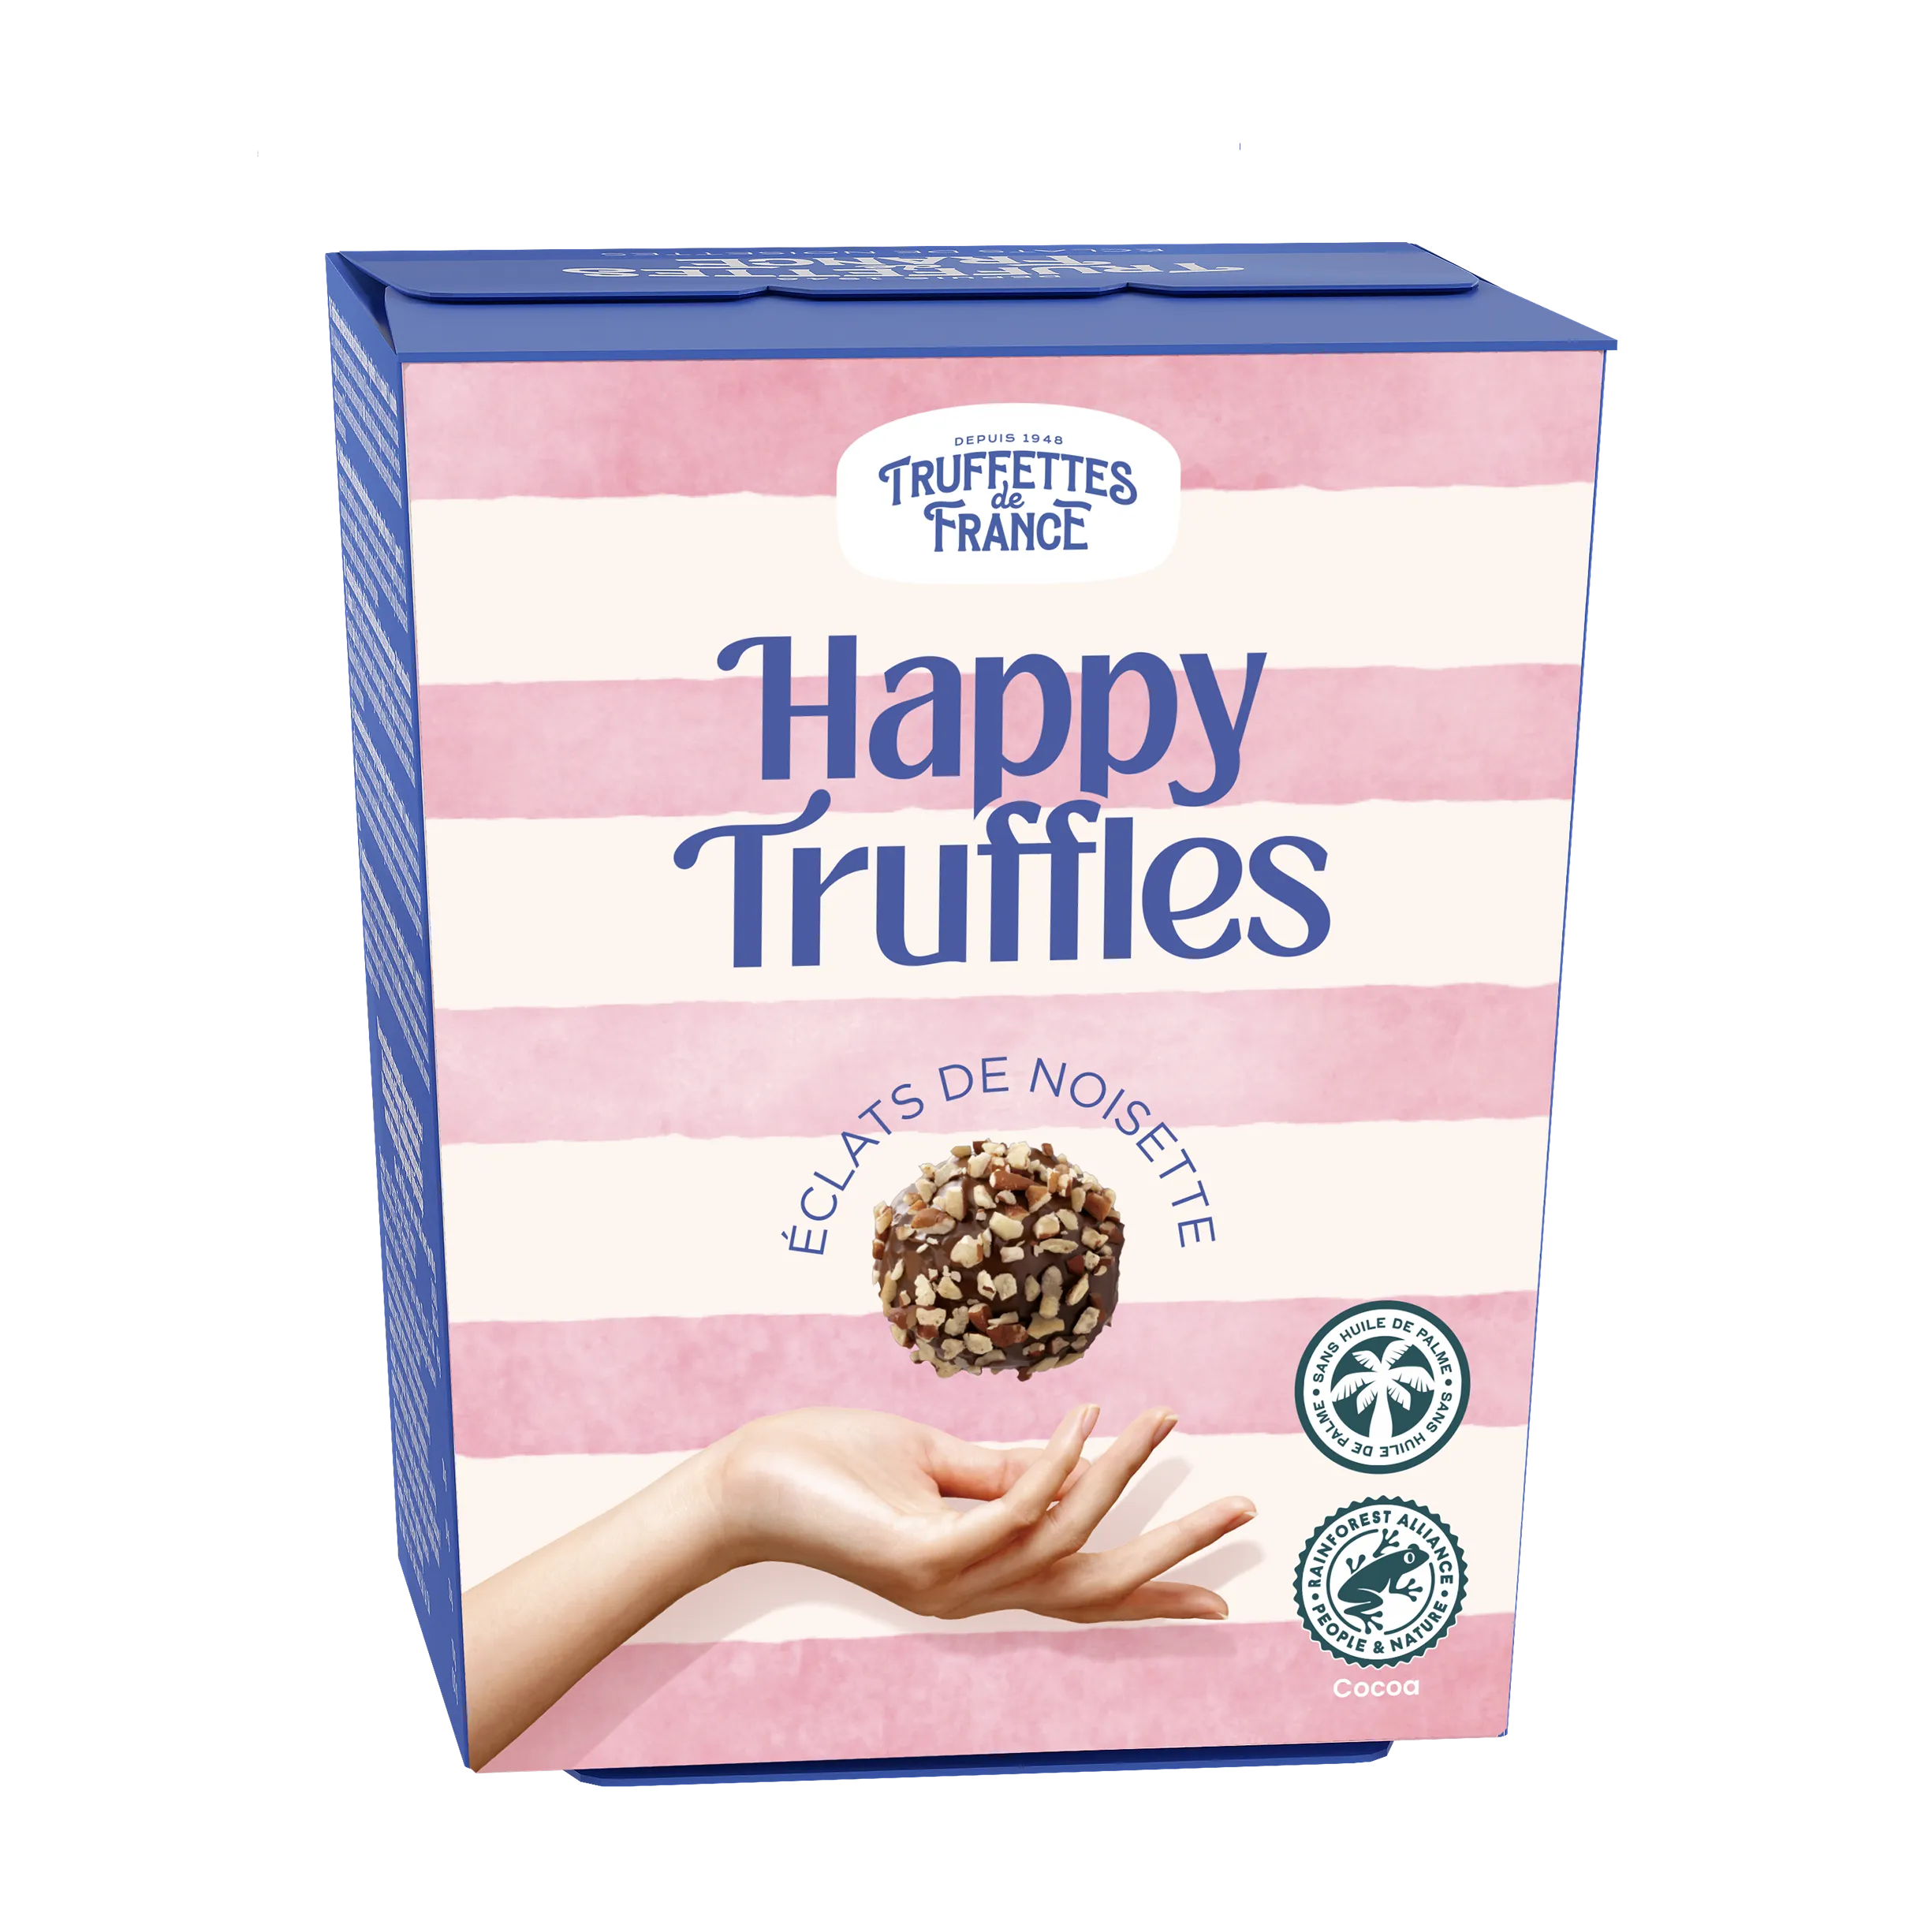 Happy Truffles Hazelnut